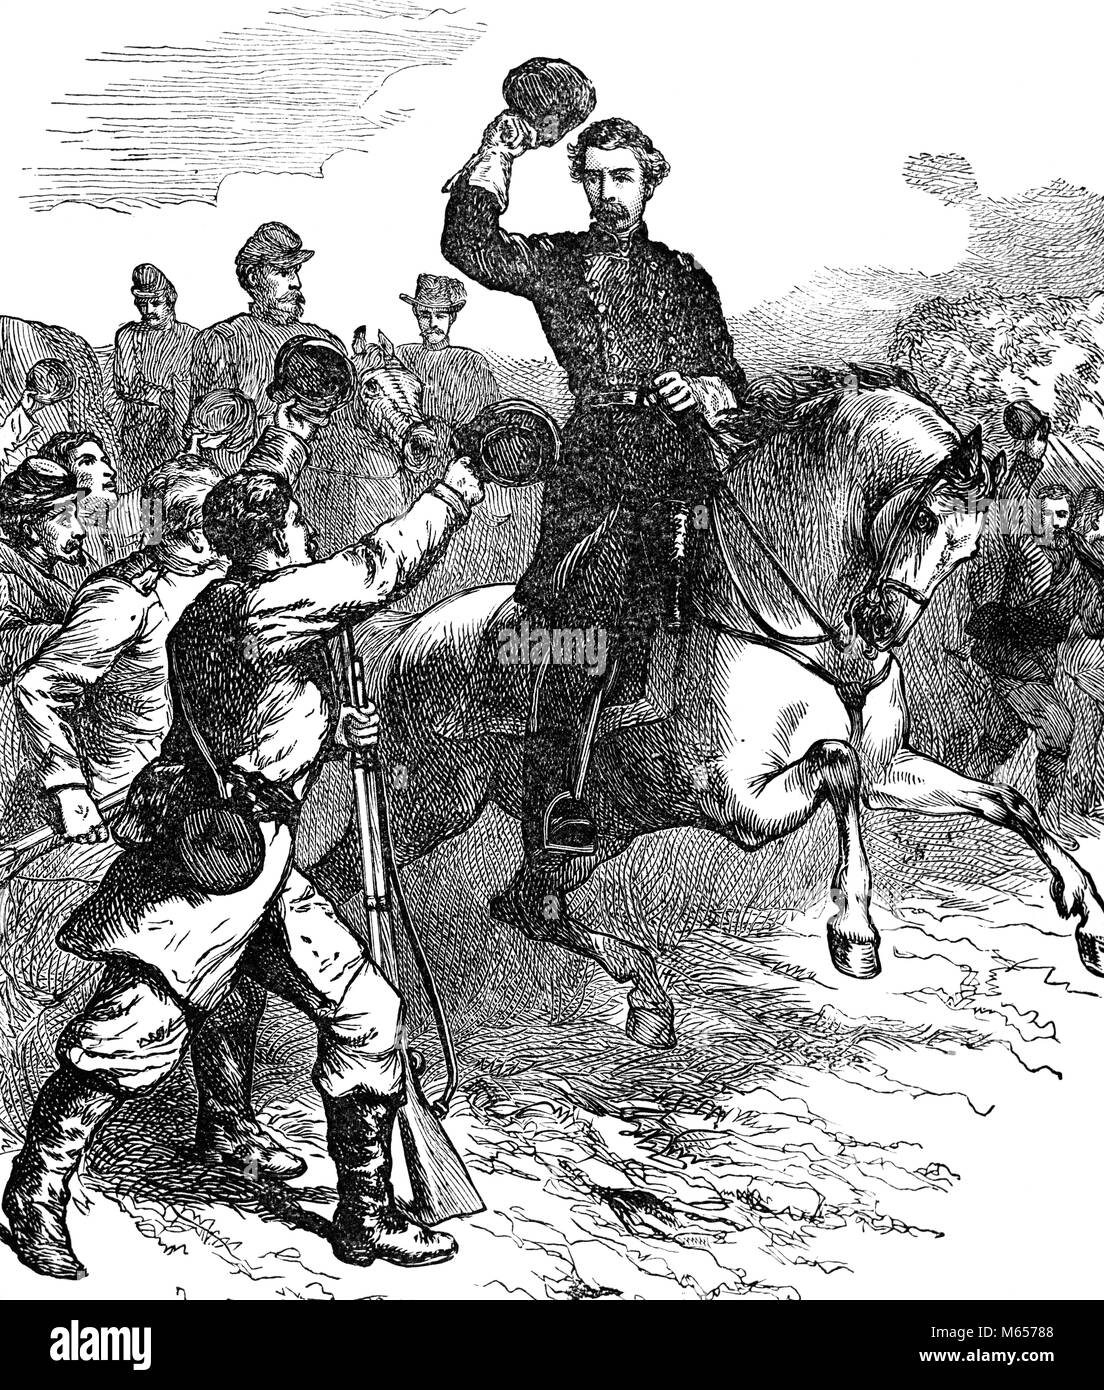 1860 5 maggio 1862 il generale dell'Unione McCLELLAN a cavallo che arrivano a Williamsburg Virginia STATI UNITI D'AMERICA - h9847 HAR001 HARS entusiasmo leadership arrivando truppe 1860s GRUPPO DI PERSONE DI SESSO MASCHILE mammifero 1862 GUERRA CIVILE AMERICANA B&W BATTAGLIE IN BIANCO E NERO LA GUERRA CIVILE DEI CONFLITTI 5 MAGGIO MCCLELLAN VECCHIO PERSONE Foto Stock